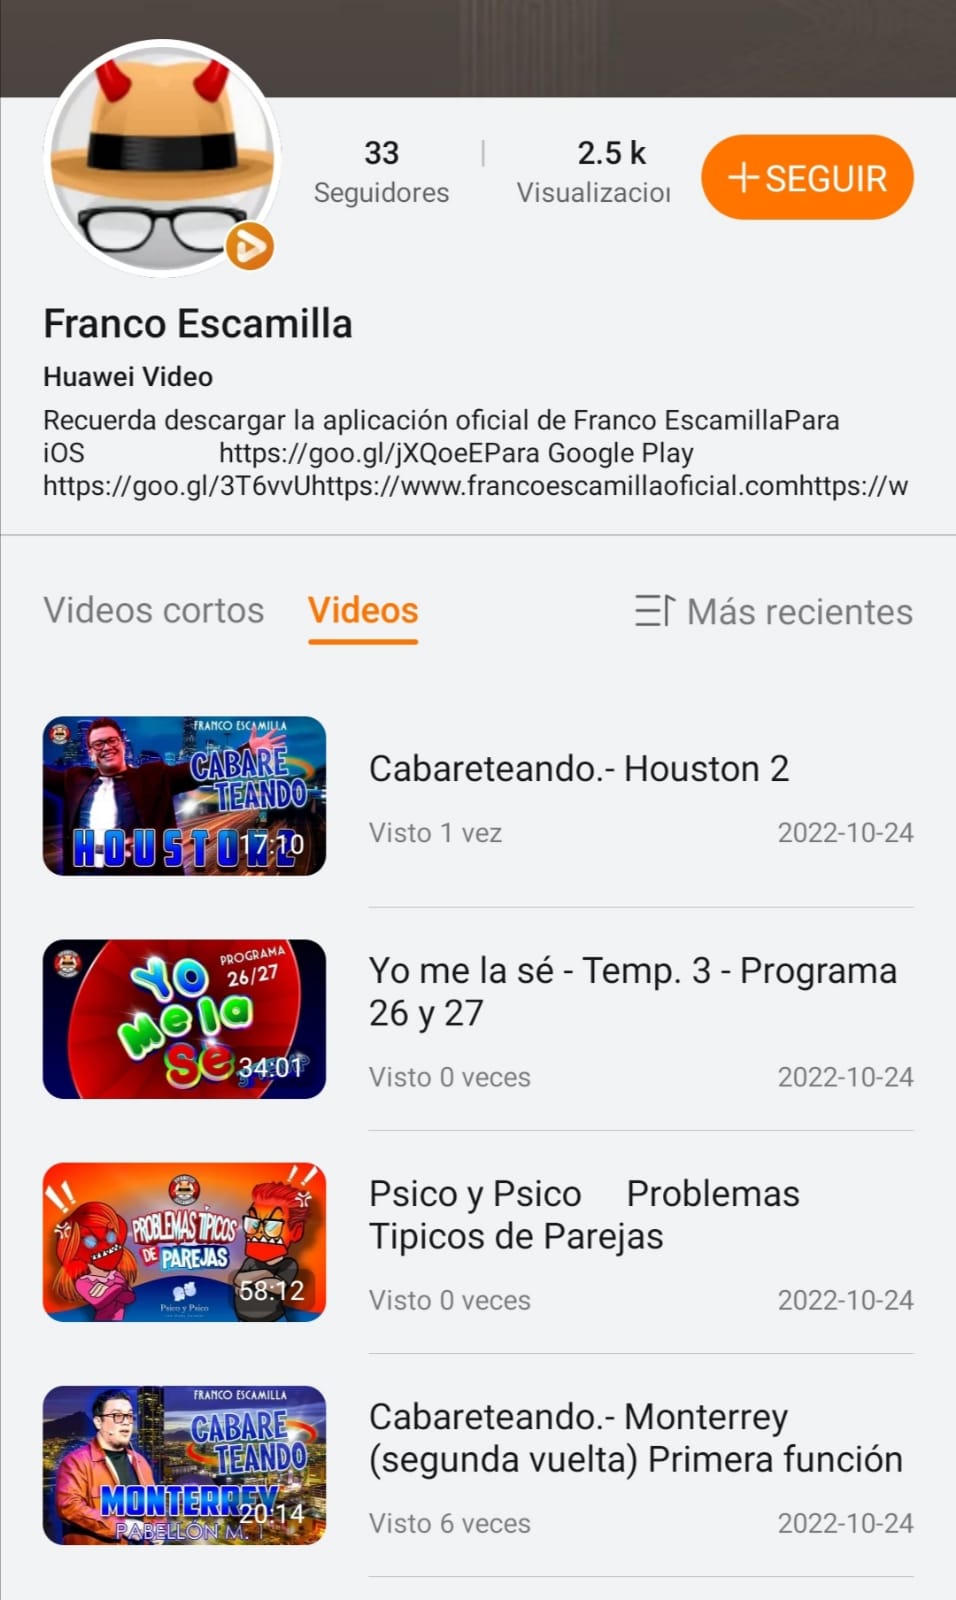 Franco Escamilla_HuaweiVideo